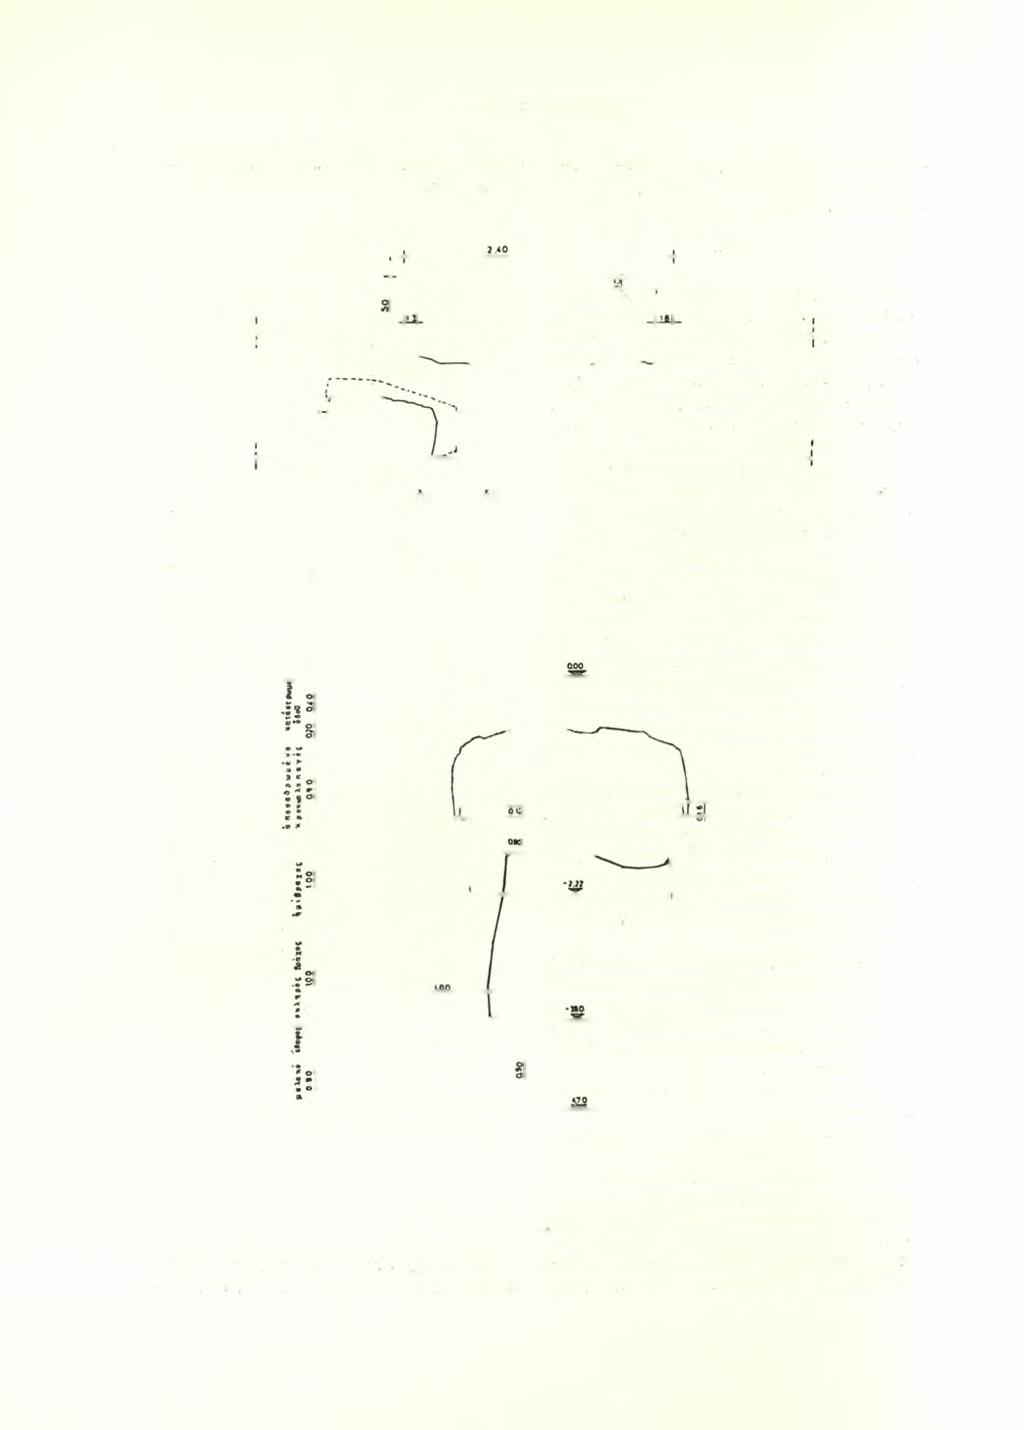 38 ΑΡΧΑΙΟΛΟΓΙΚΟΝ ΔΕΛΤΙΟΝ 17 (1961/2) : ΧΡΟΝΙΚΑ έν μέρει πρόχους τριφυλλόσχημος (Π ί ν. 40 α ), τό ήμισυ λεκανίδος καί δύο άποτμήματα μέ μελανόμορφον διακόσμησιν.